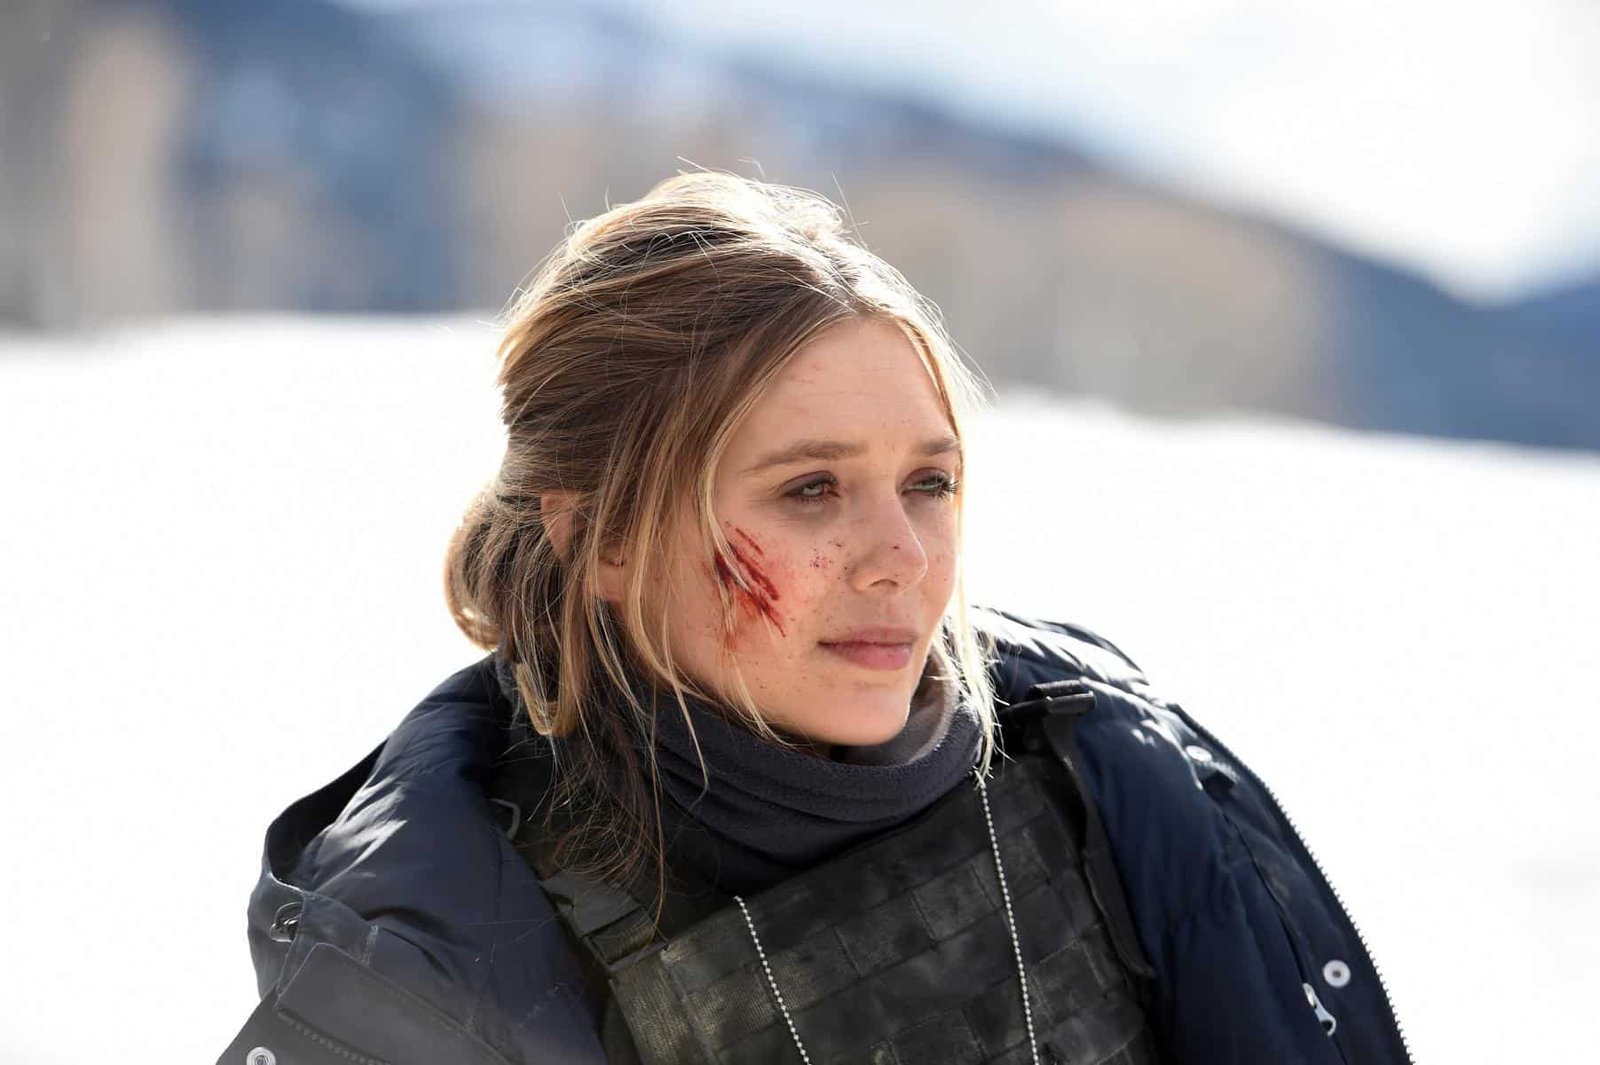 6 Best Elizabeth Olsen Movies Ranked - Wind River